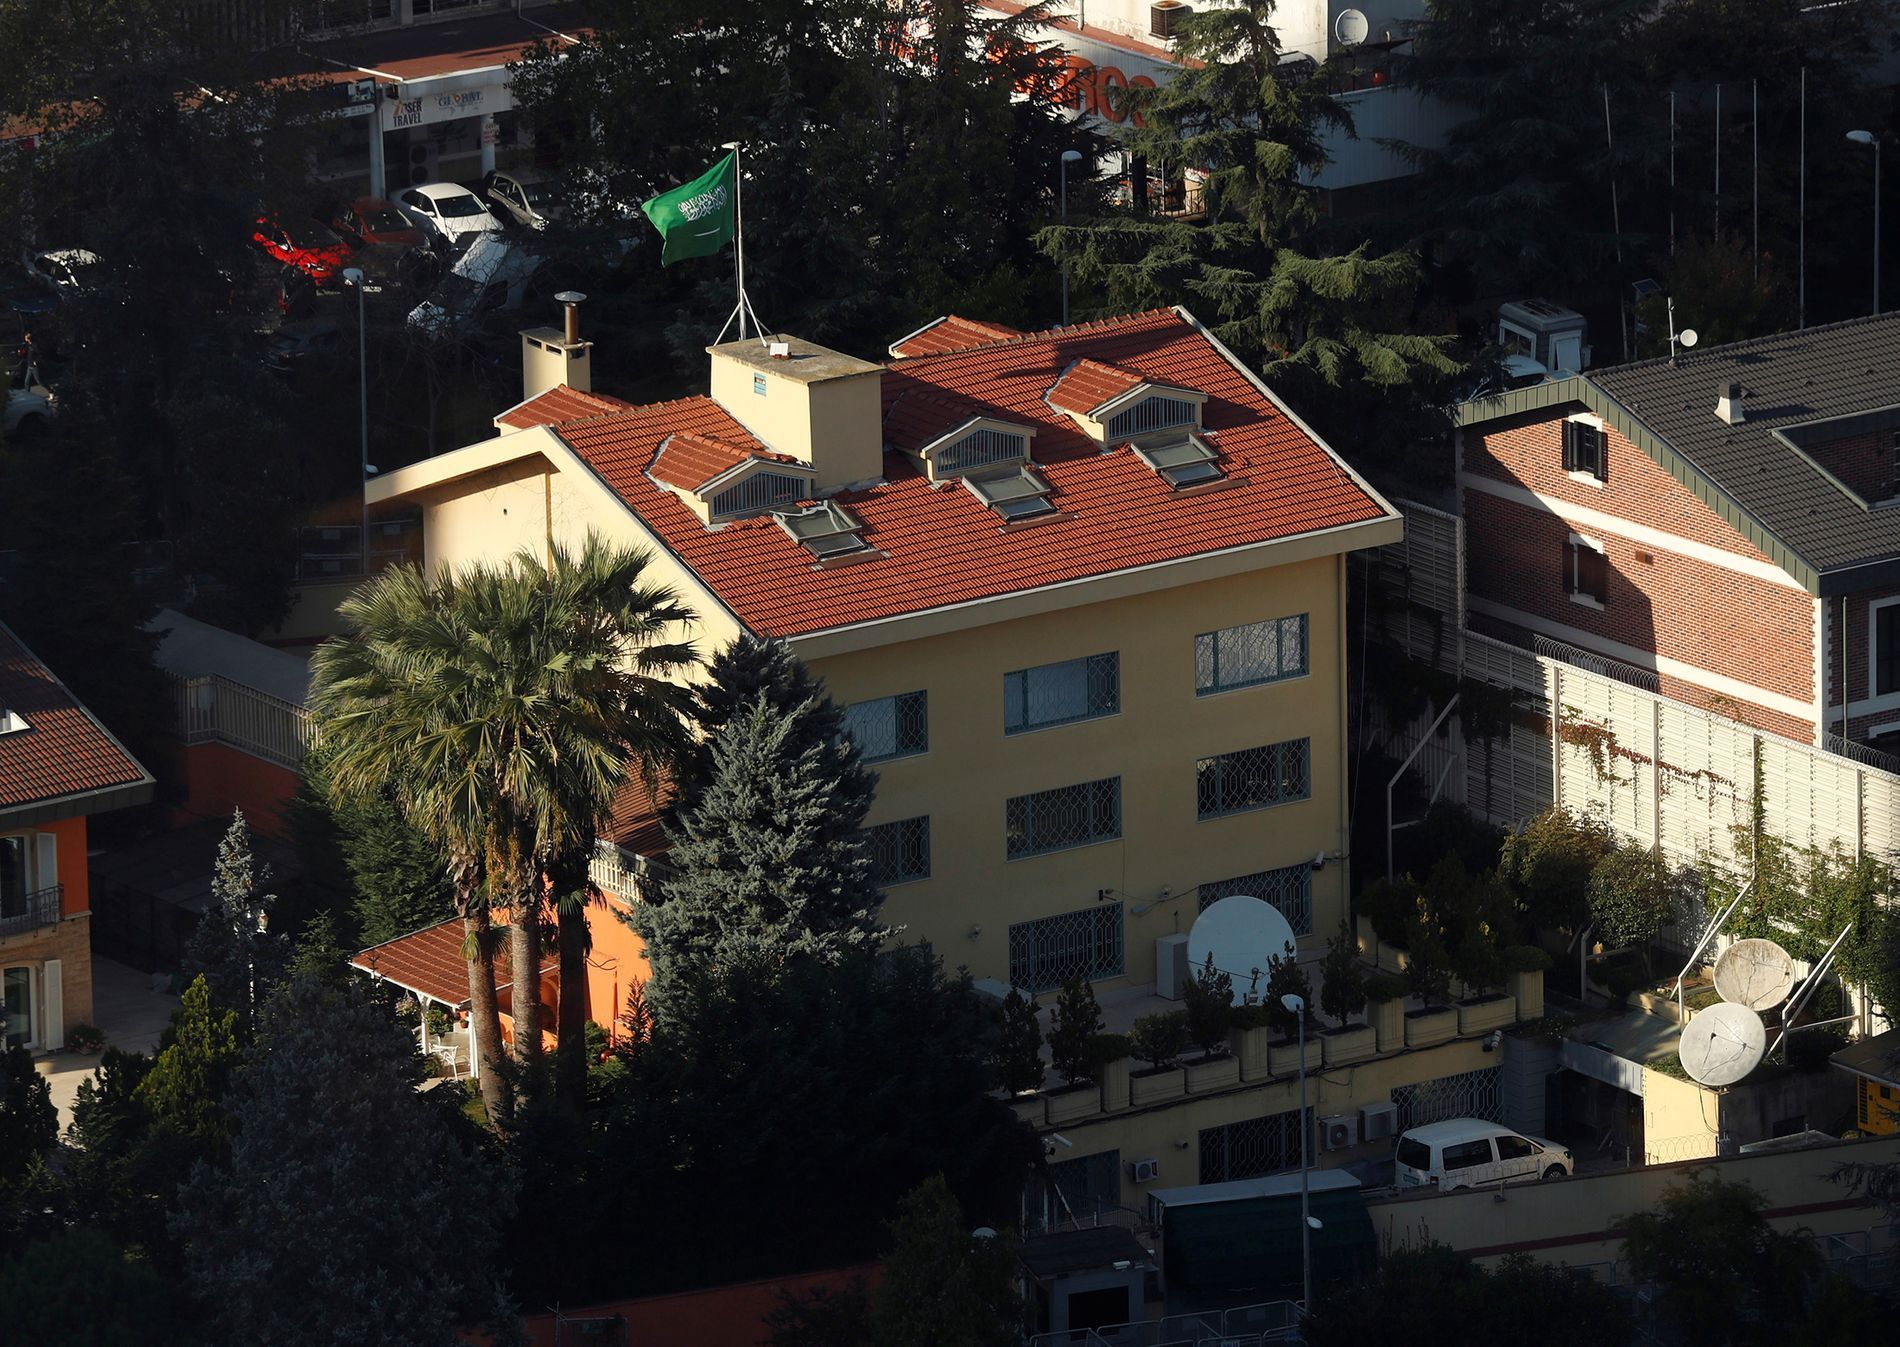 Fotogalerie / Vyšetřování vraždy saudského novináře na istambulském konzulátu / Reuters